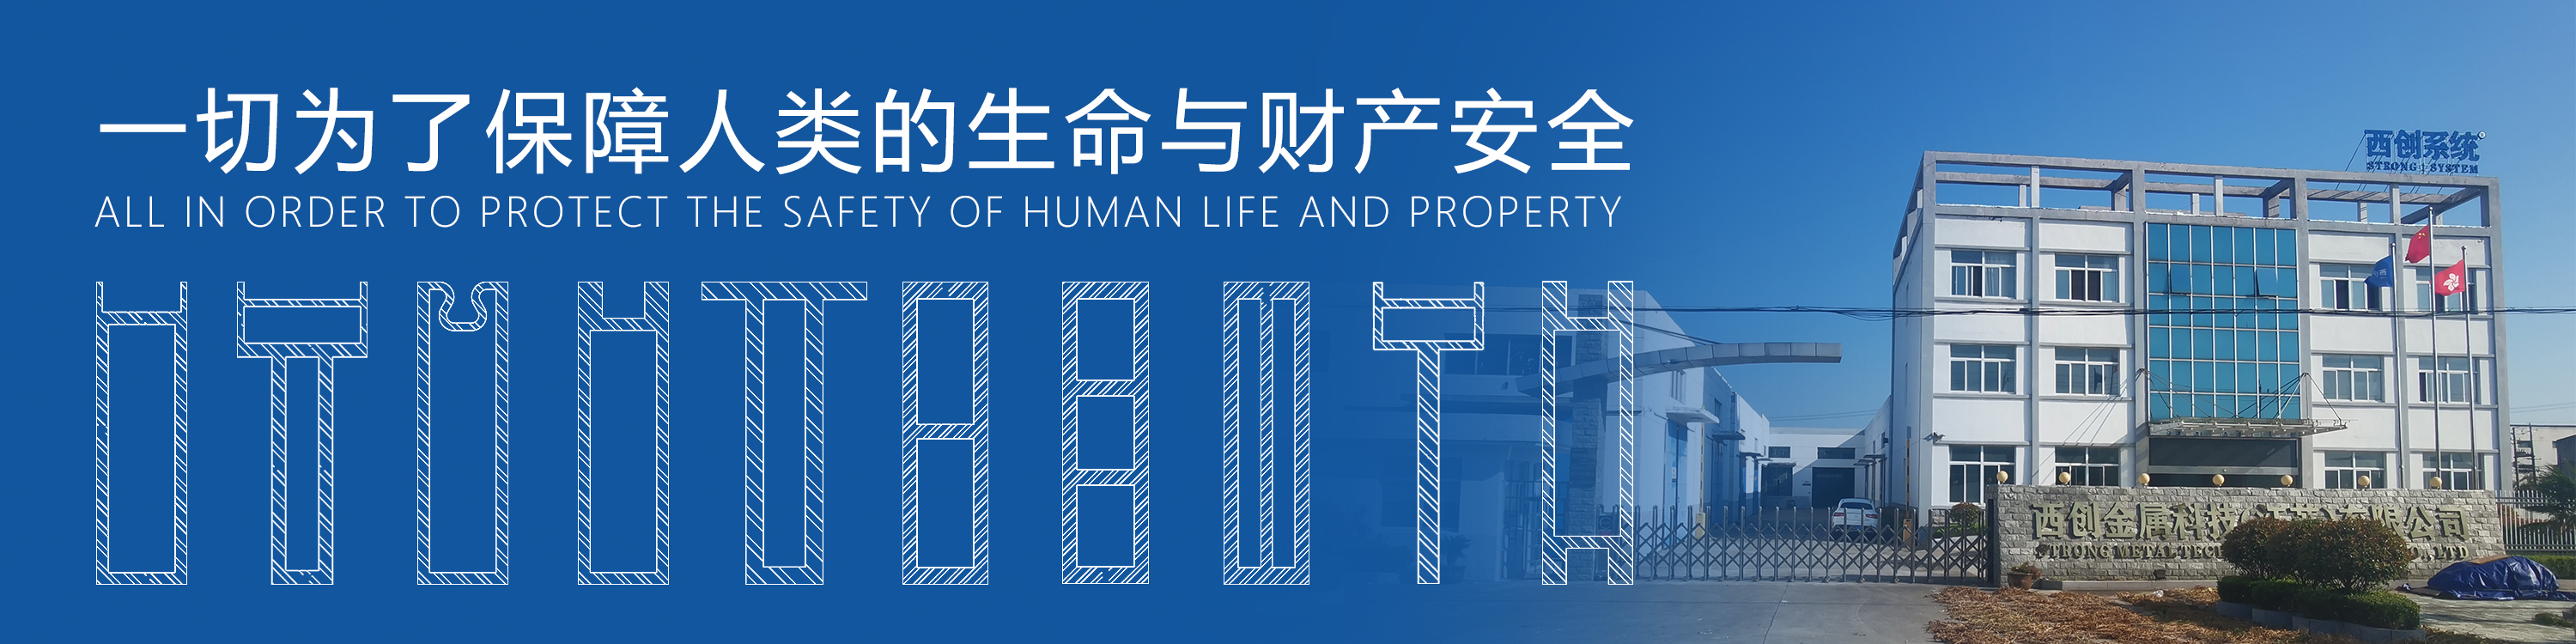 上海设计院办公楼且型精制钢幕墙系统图纸深化案例 - 西创系统(图15)